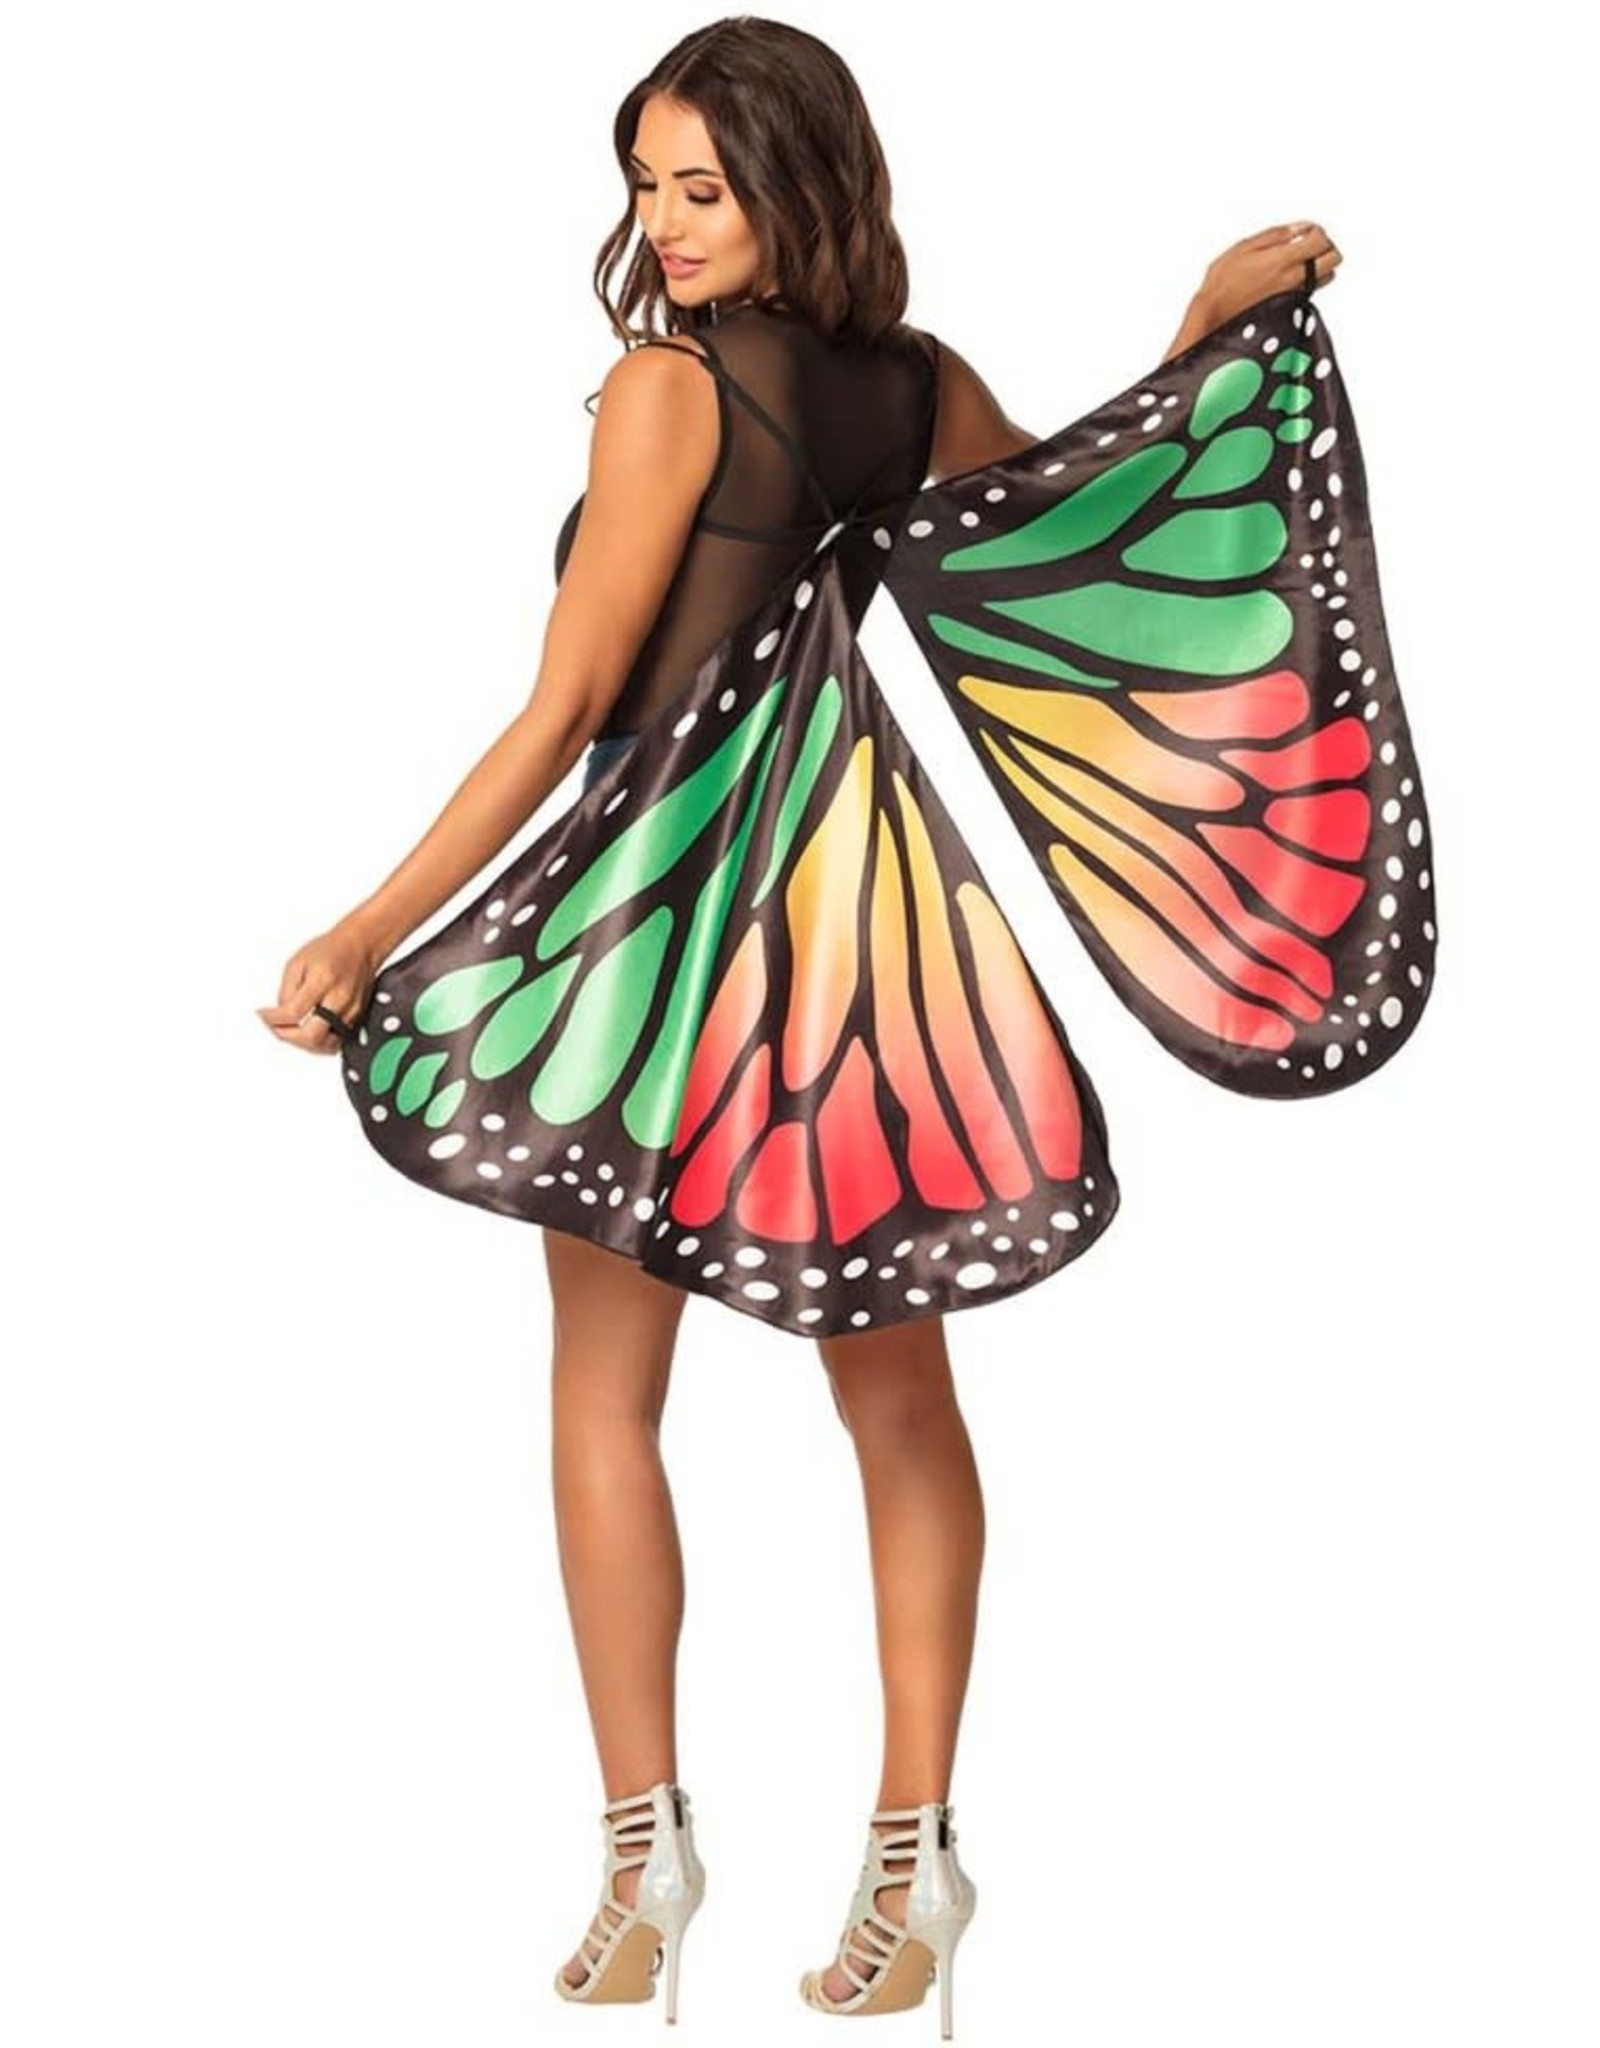 Vleugels Vlinder (83 x 130cm)